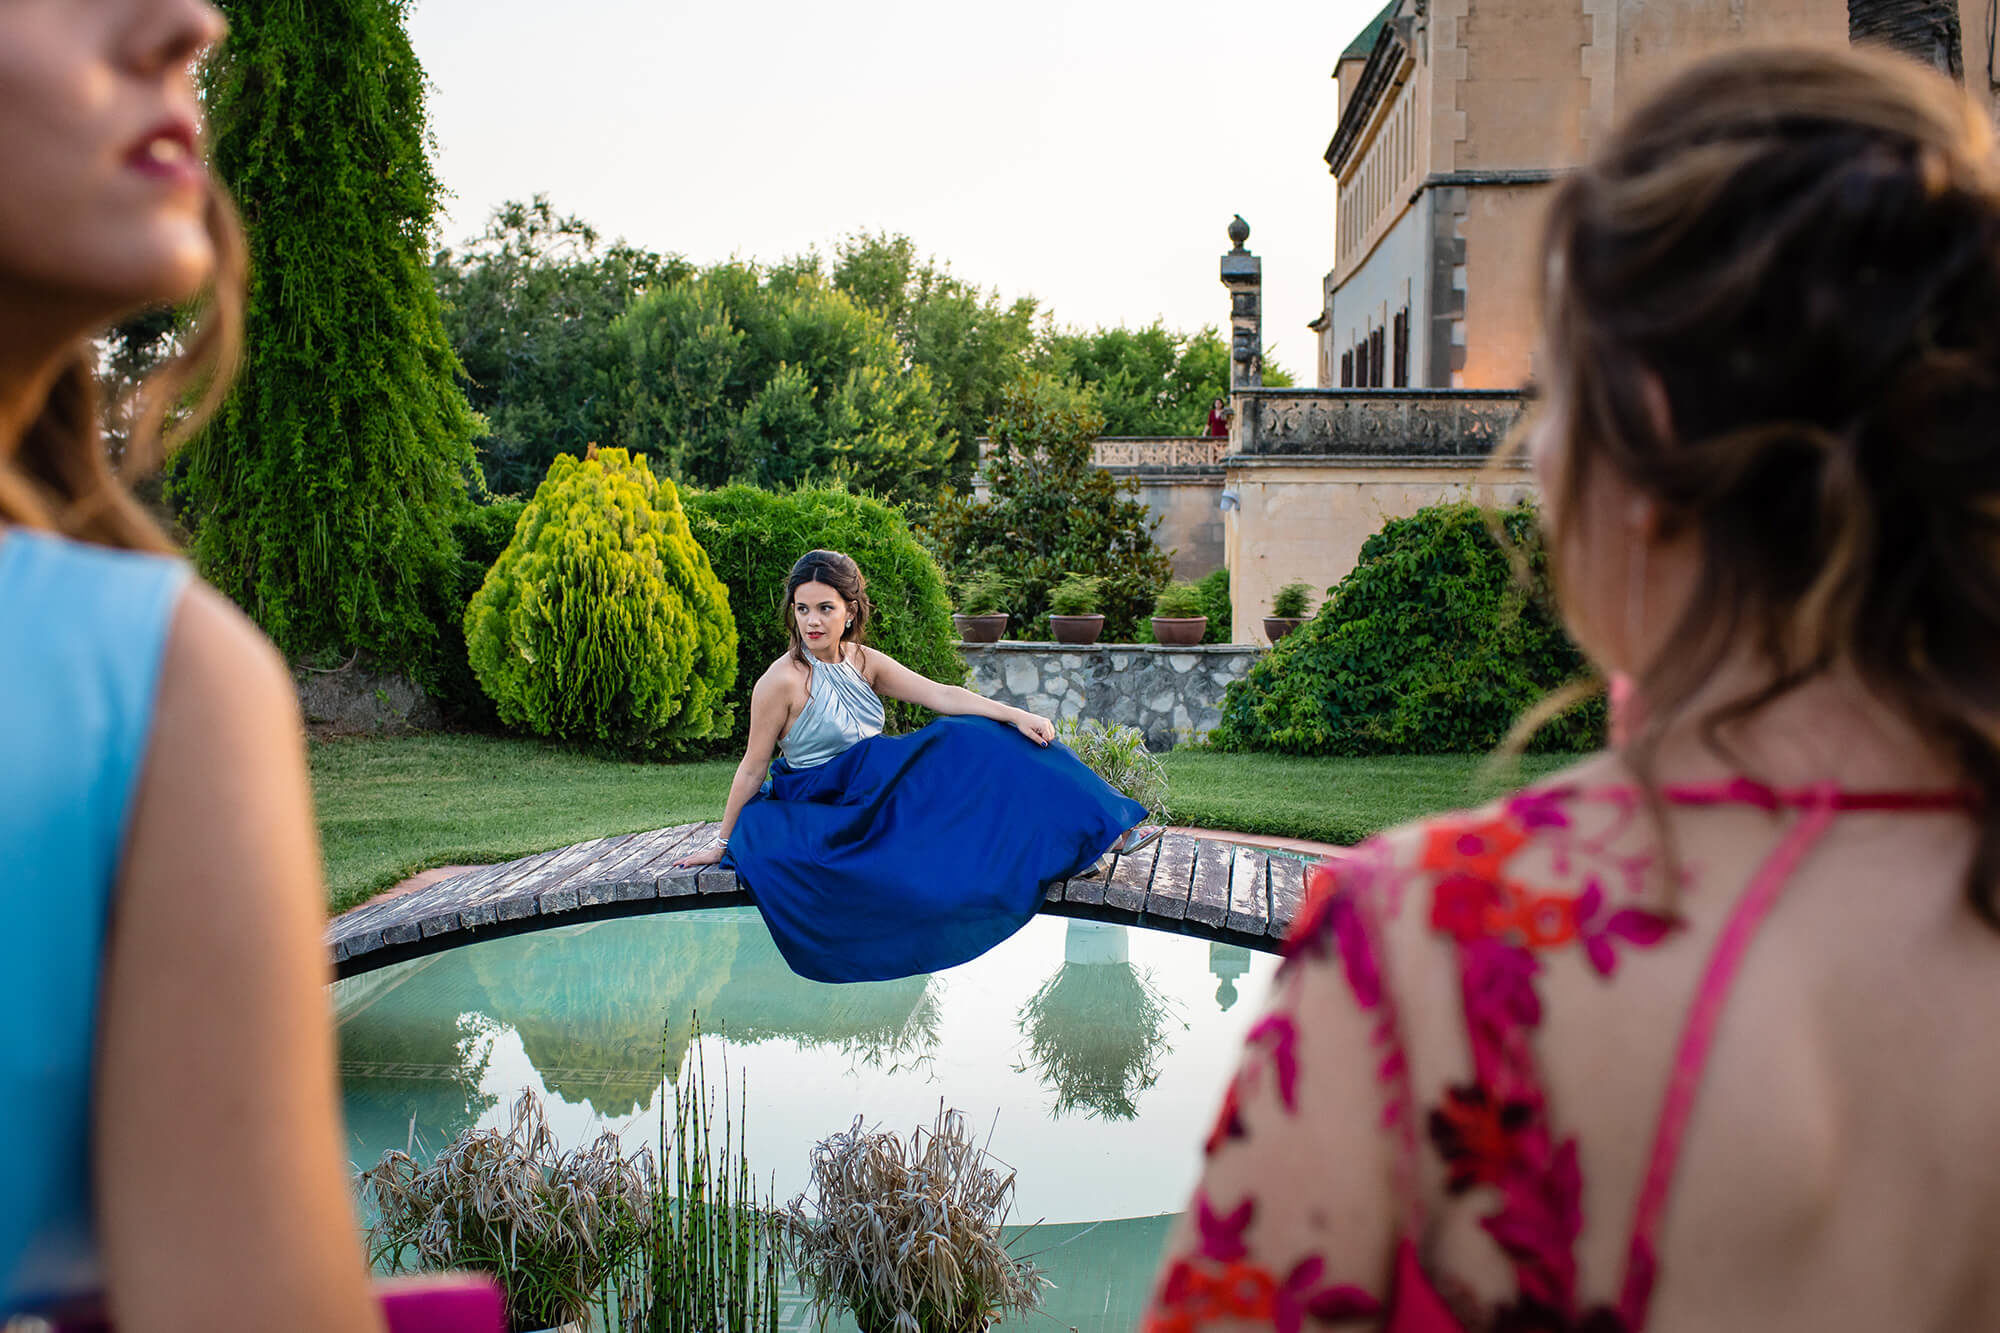 Nou Enfoc fotògrafs de boda de Vilafranca del Penedès a Barcelona - boda-heretat-sabartes-jardins2.jpg